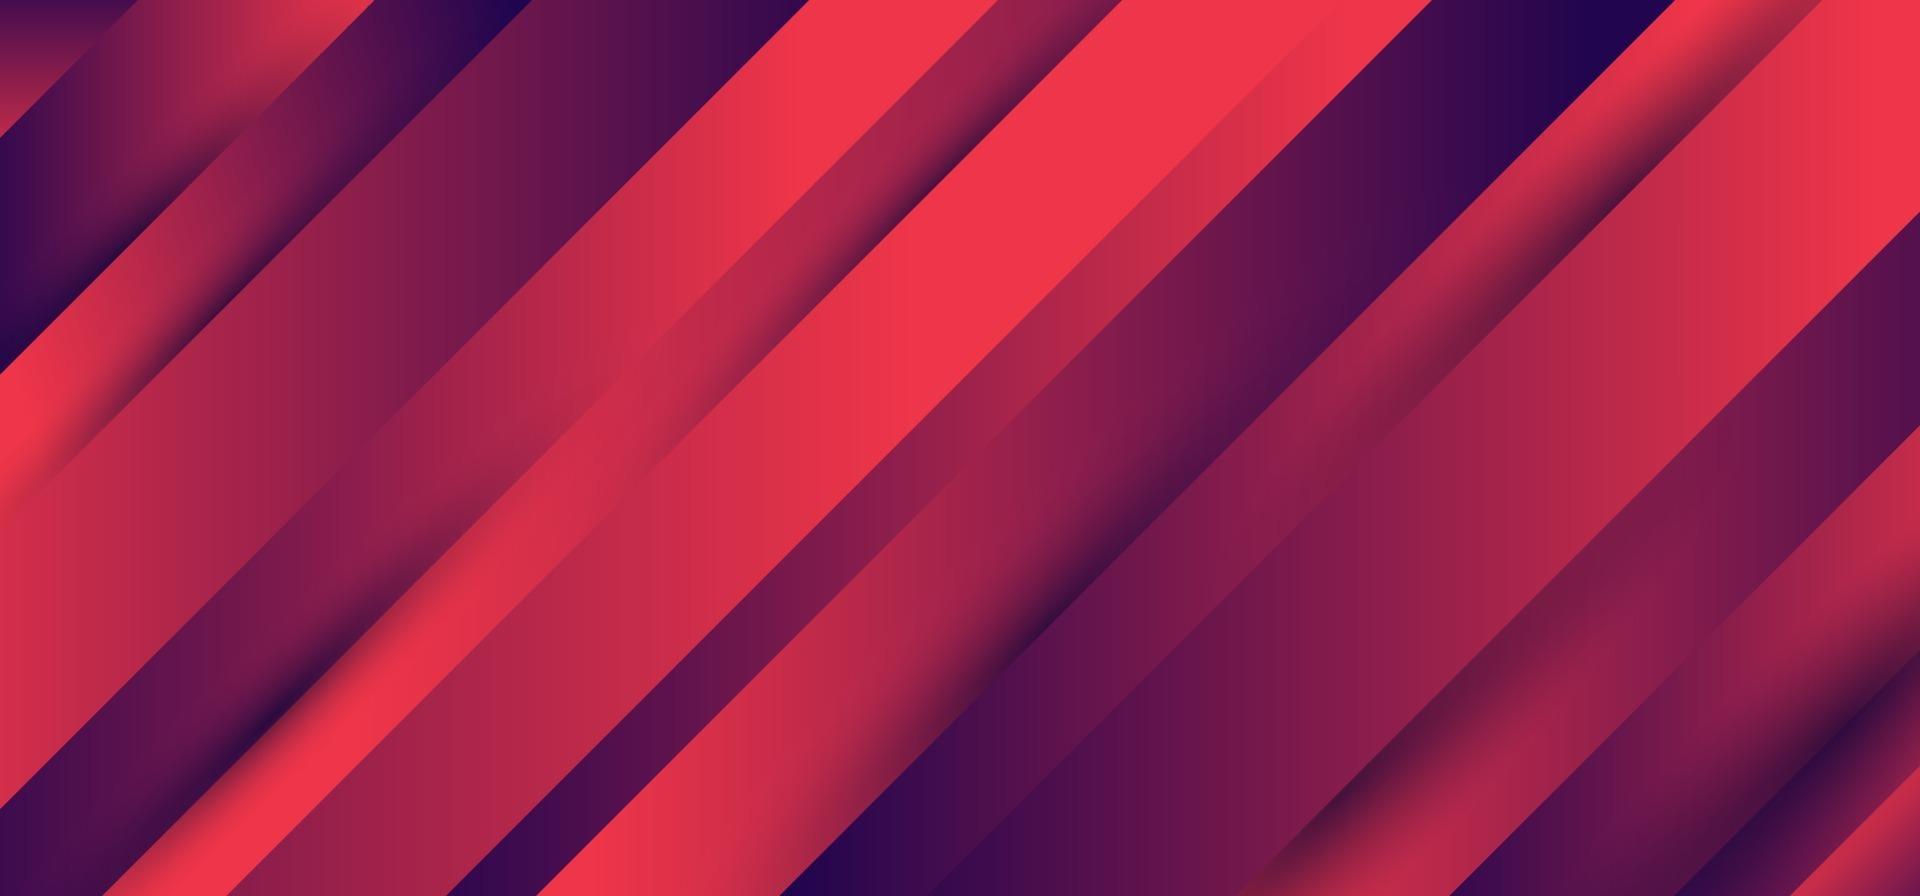 strepen diagonaal patroon blauw en roze levendige kleurverloop achtergrond textuur minimale stijl vector